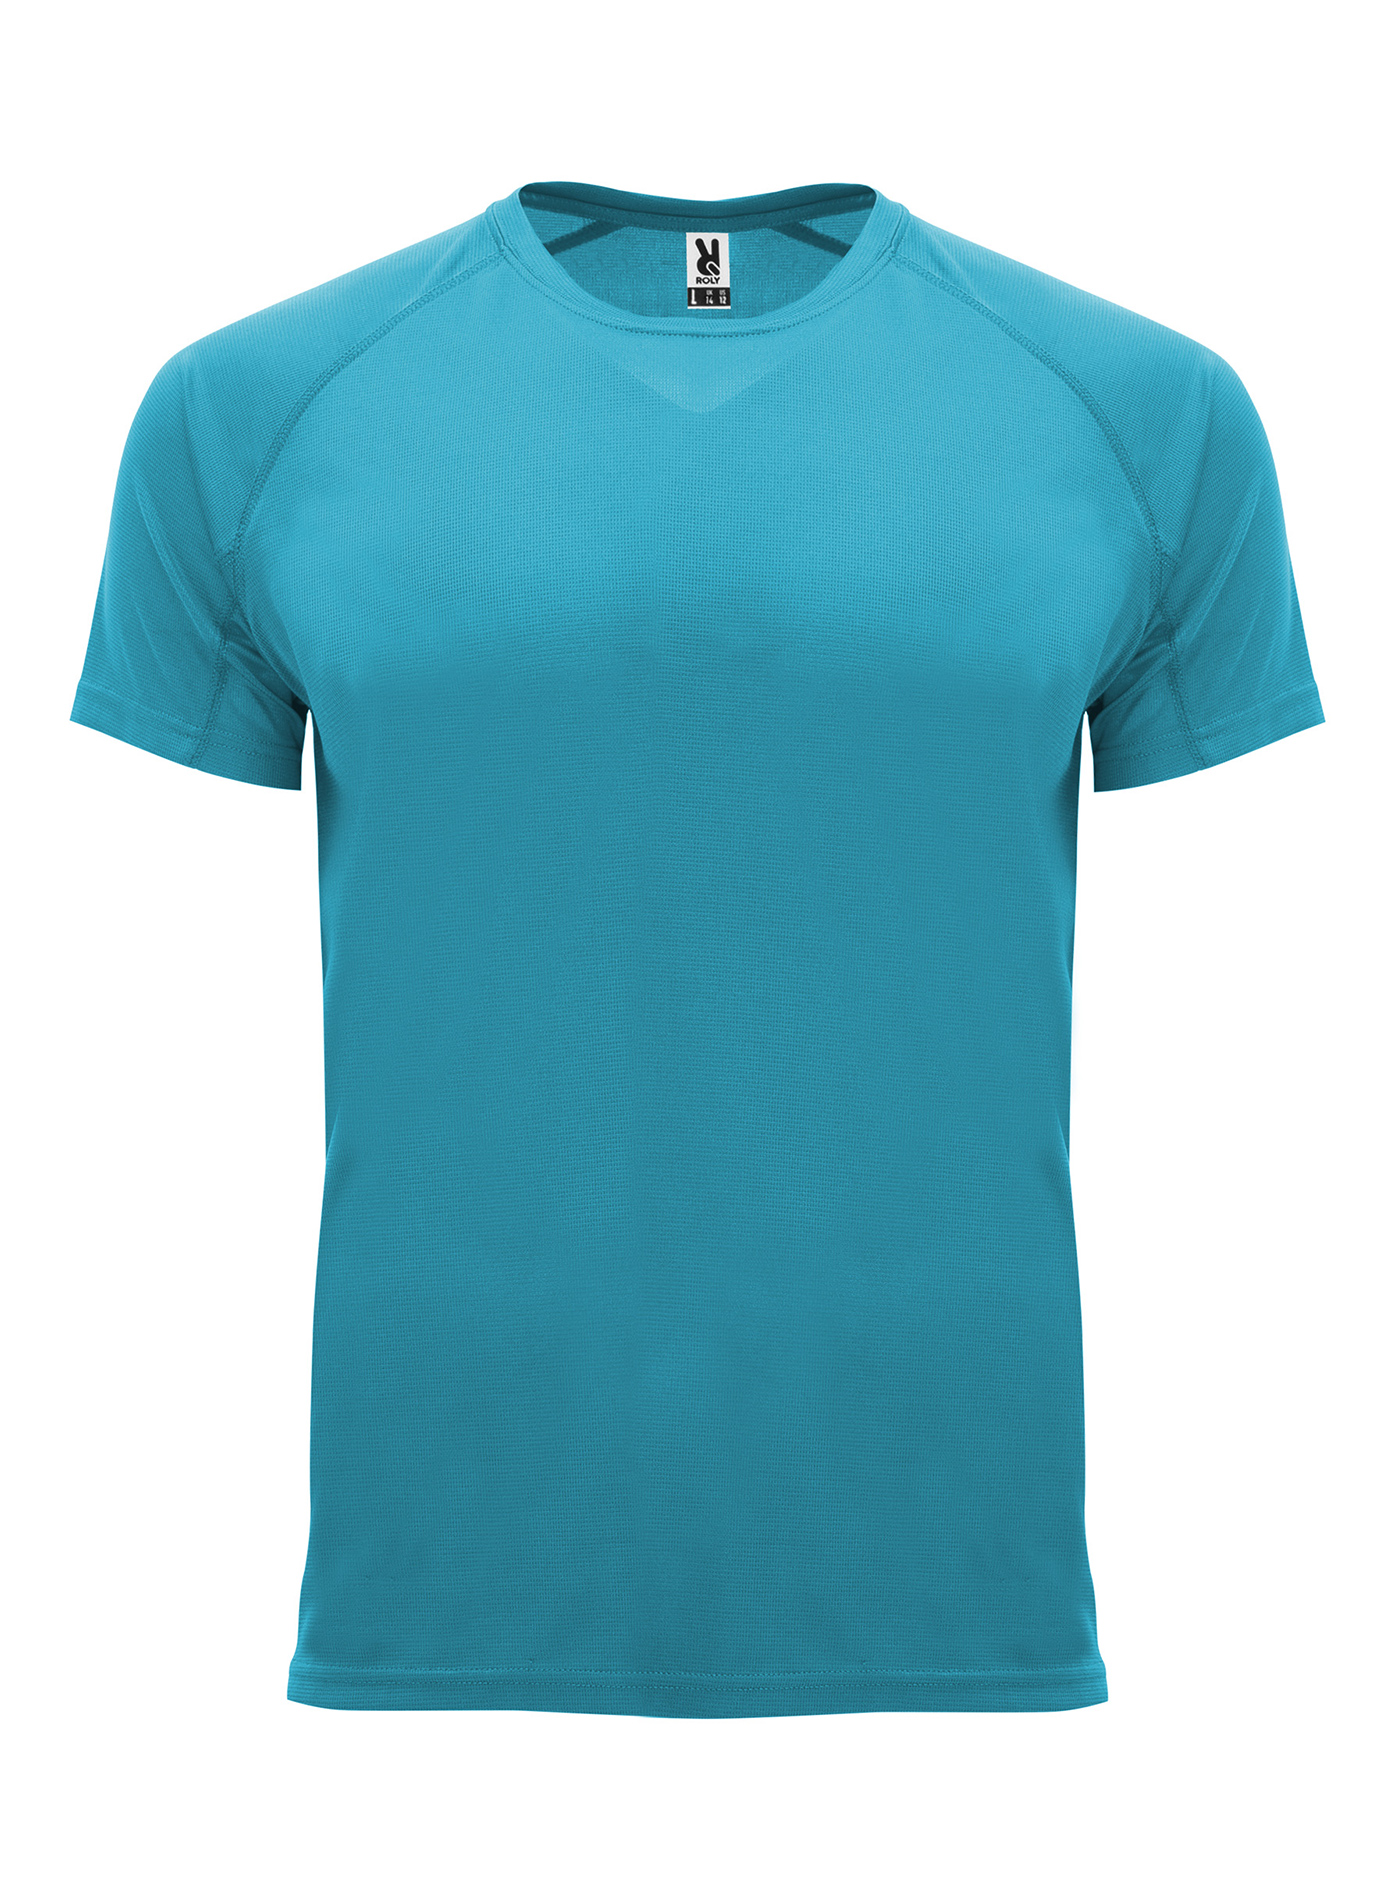 Pánské sportovní tričko Roly Bahrain - Tyrkysově modrá M